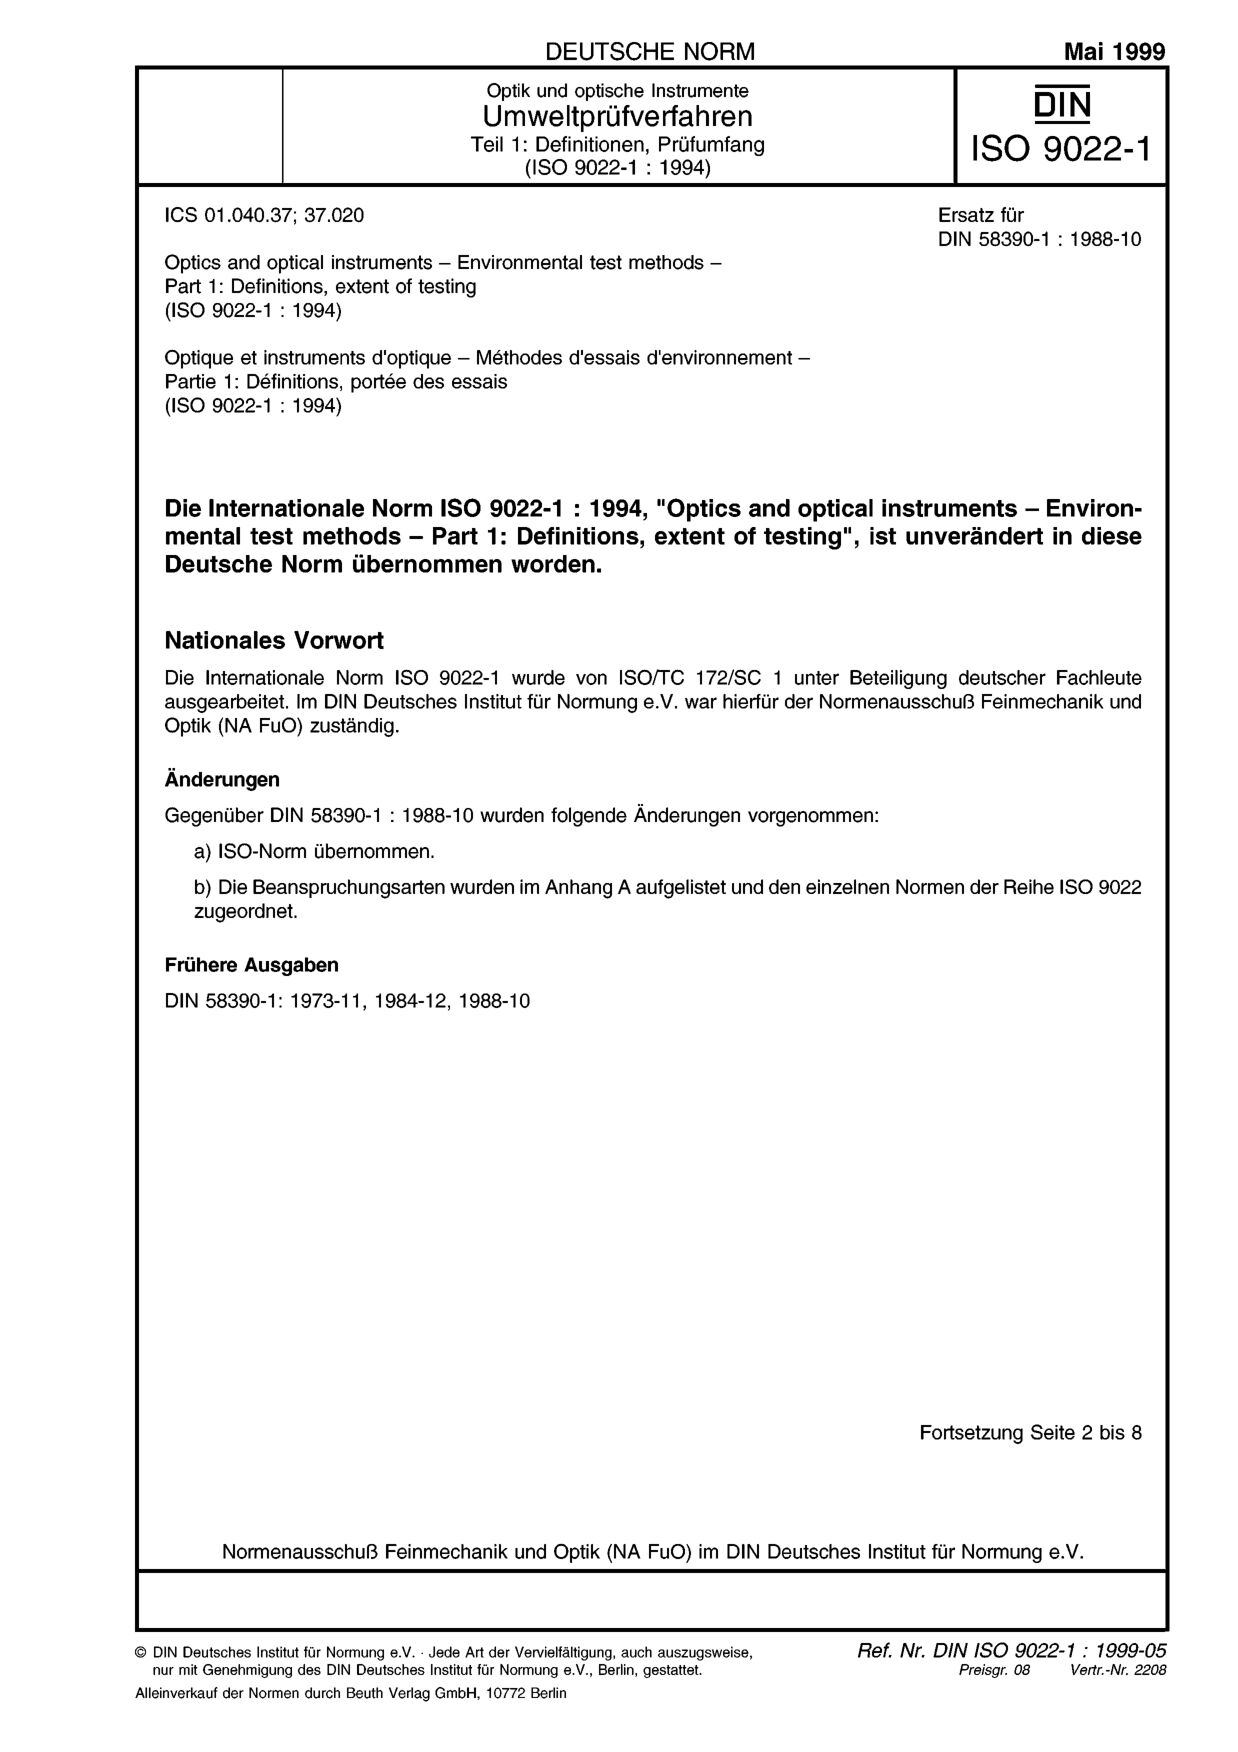 DIN ISO 9022-1:1999-05封面图